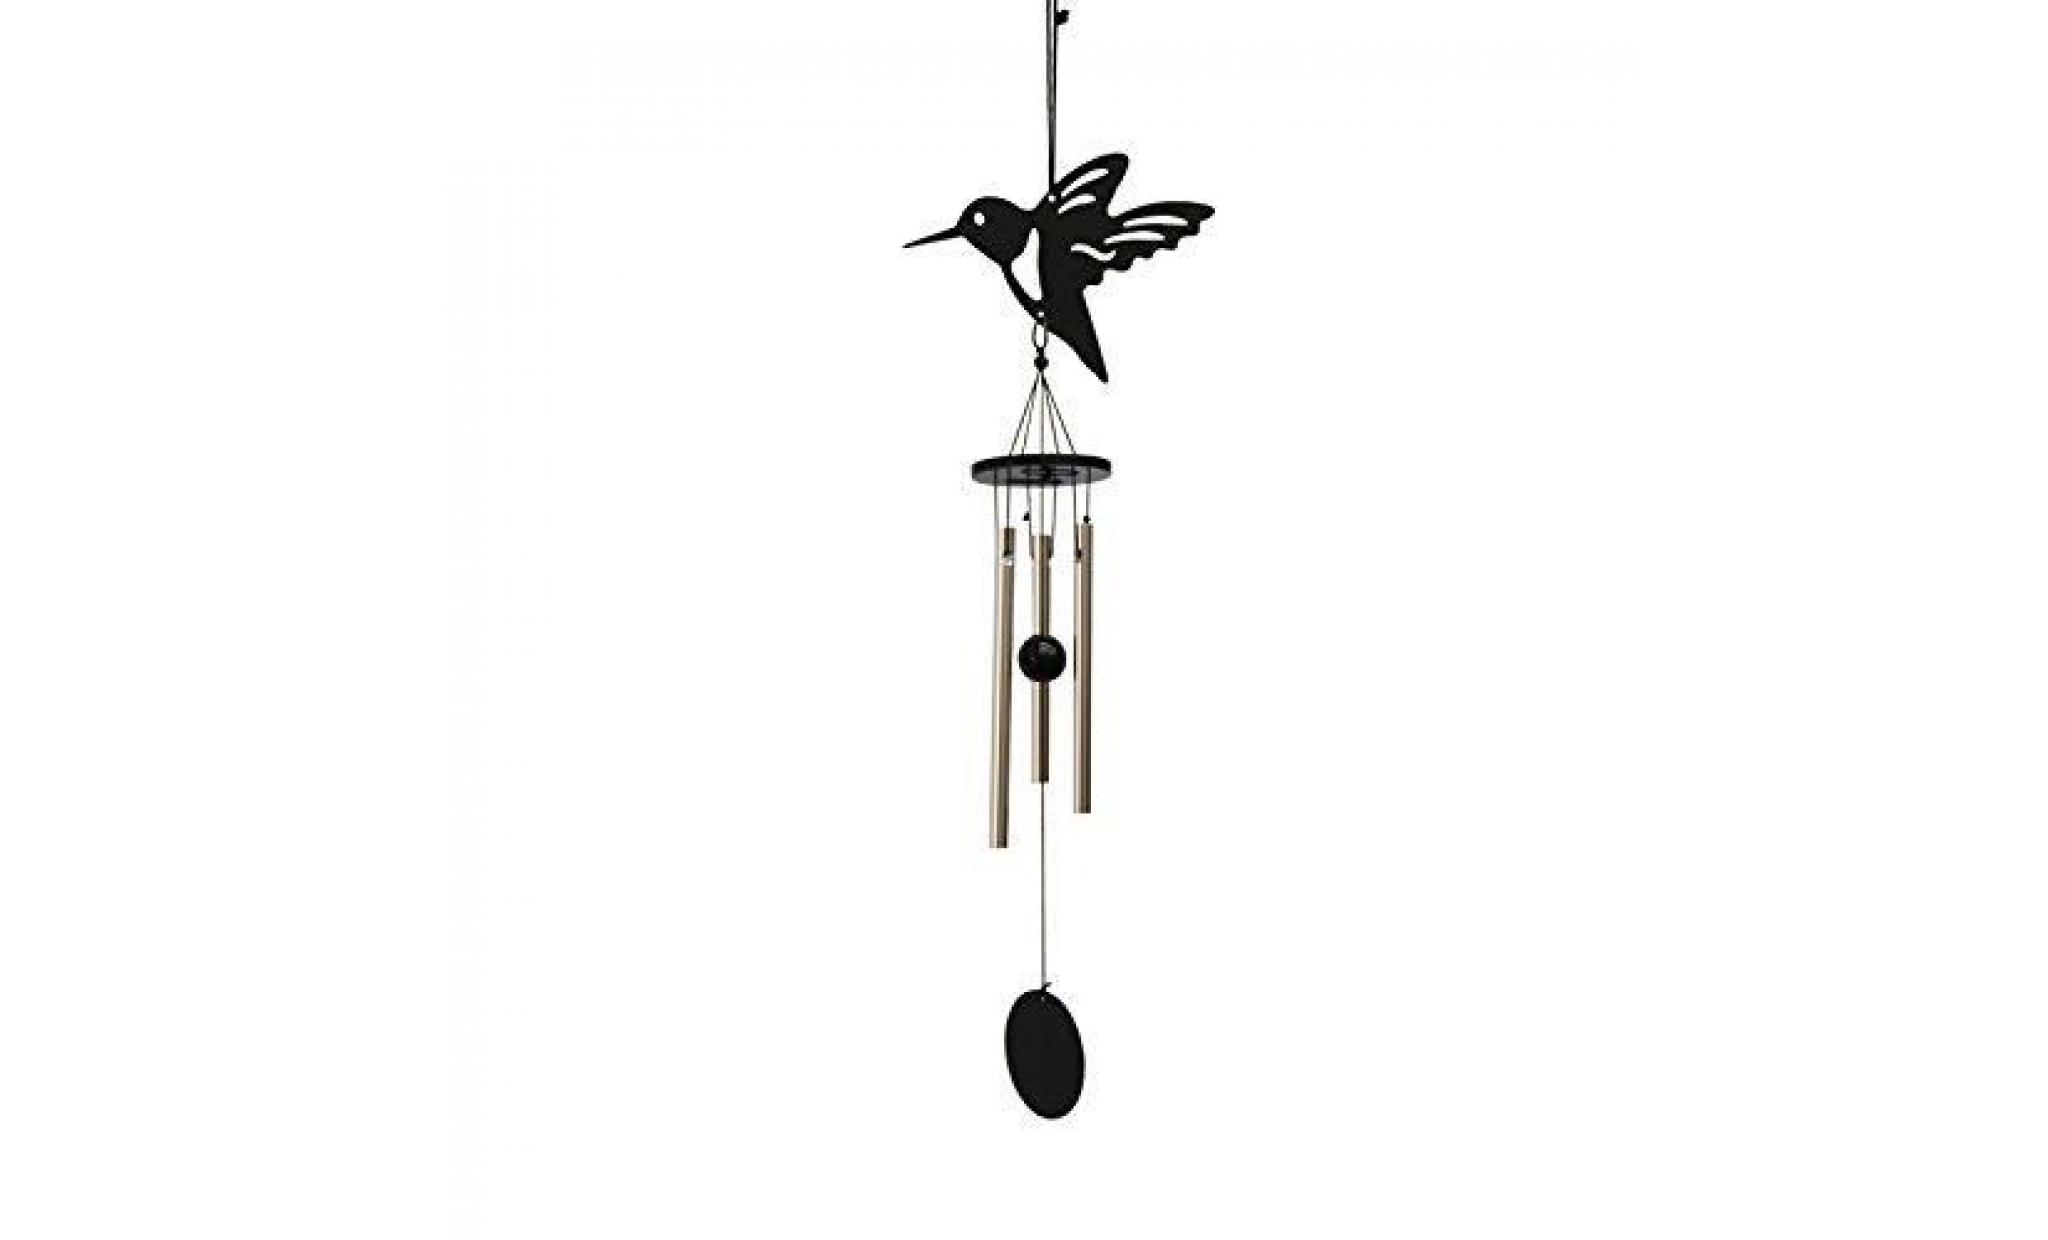 runfon carillon de vent 3 tubes cloches métallique feng shui décoration suspendue   oiseau